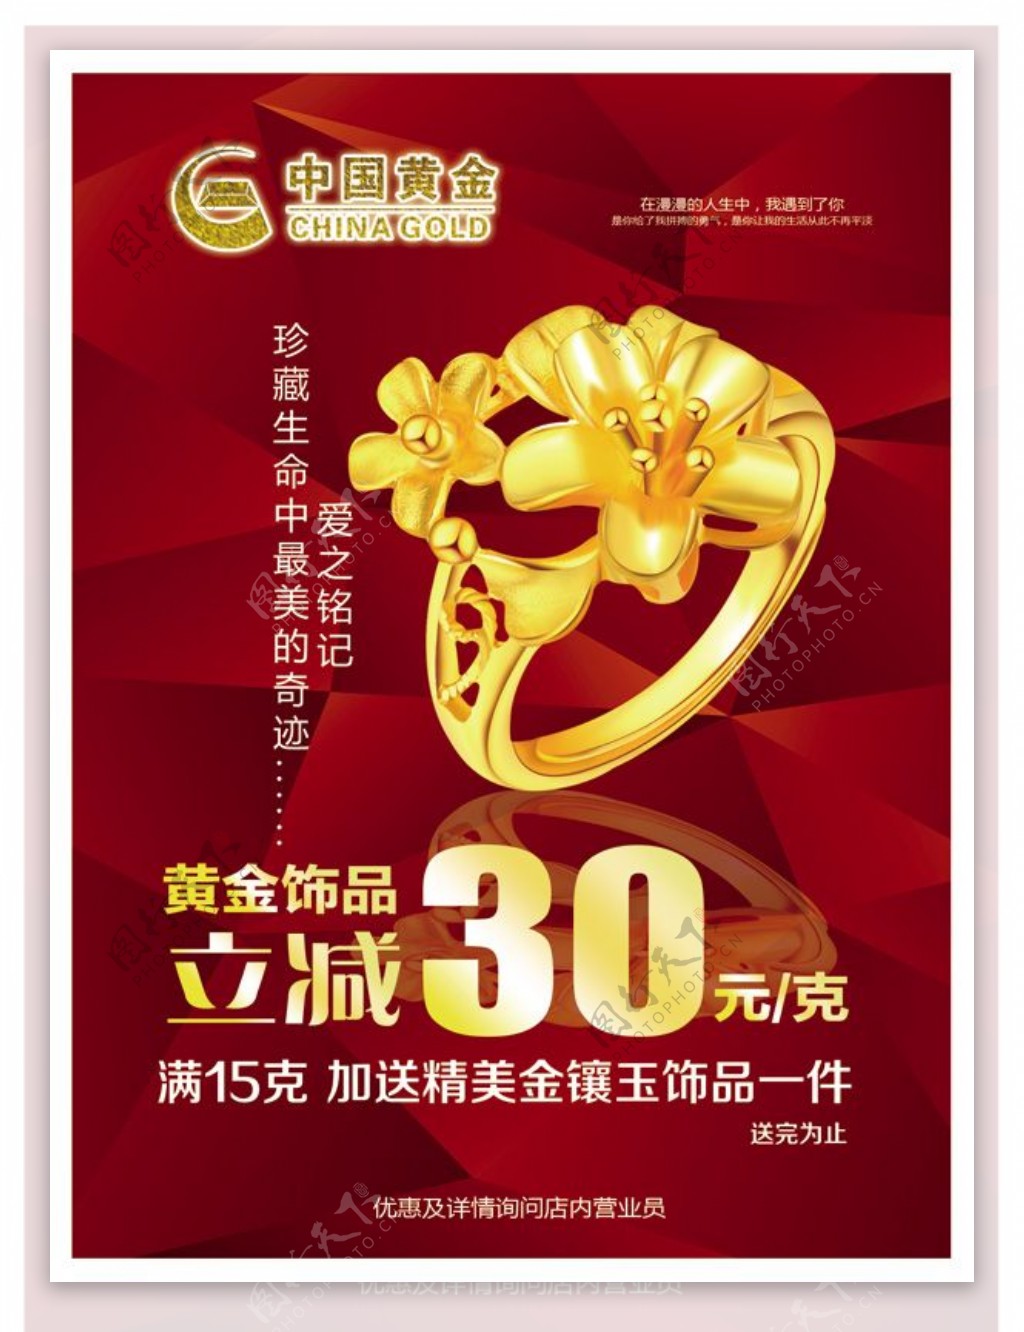 中国黄金戒指广告PSD素材